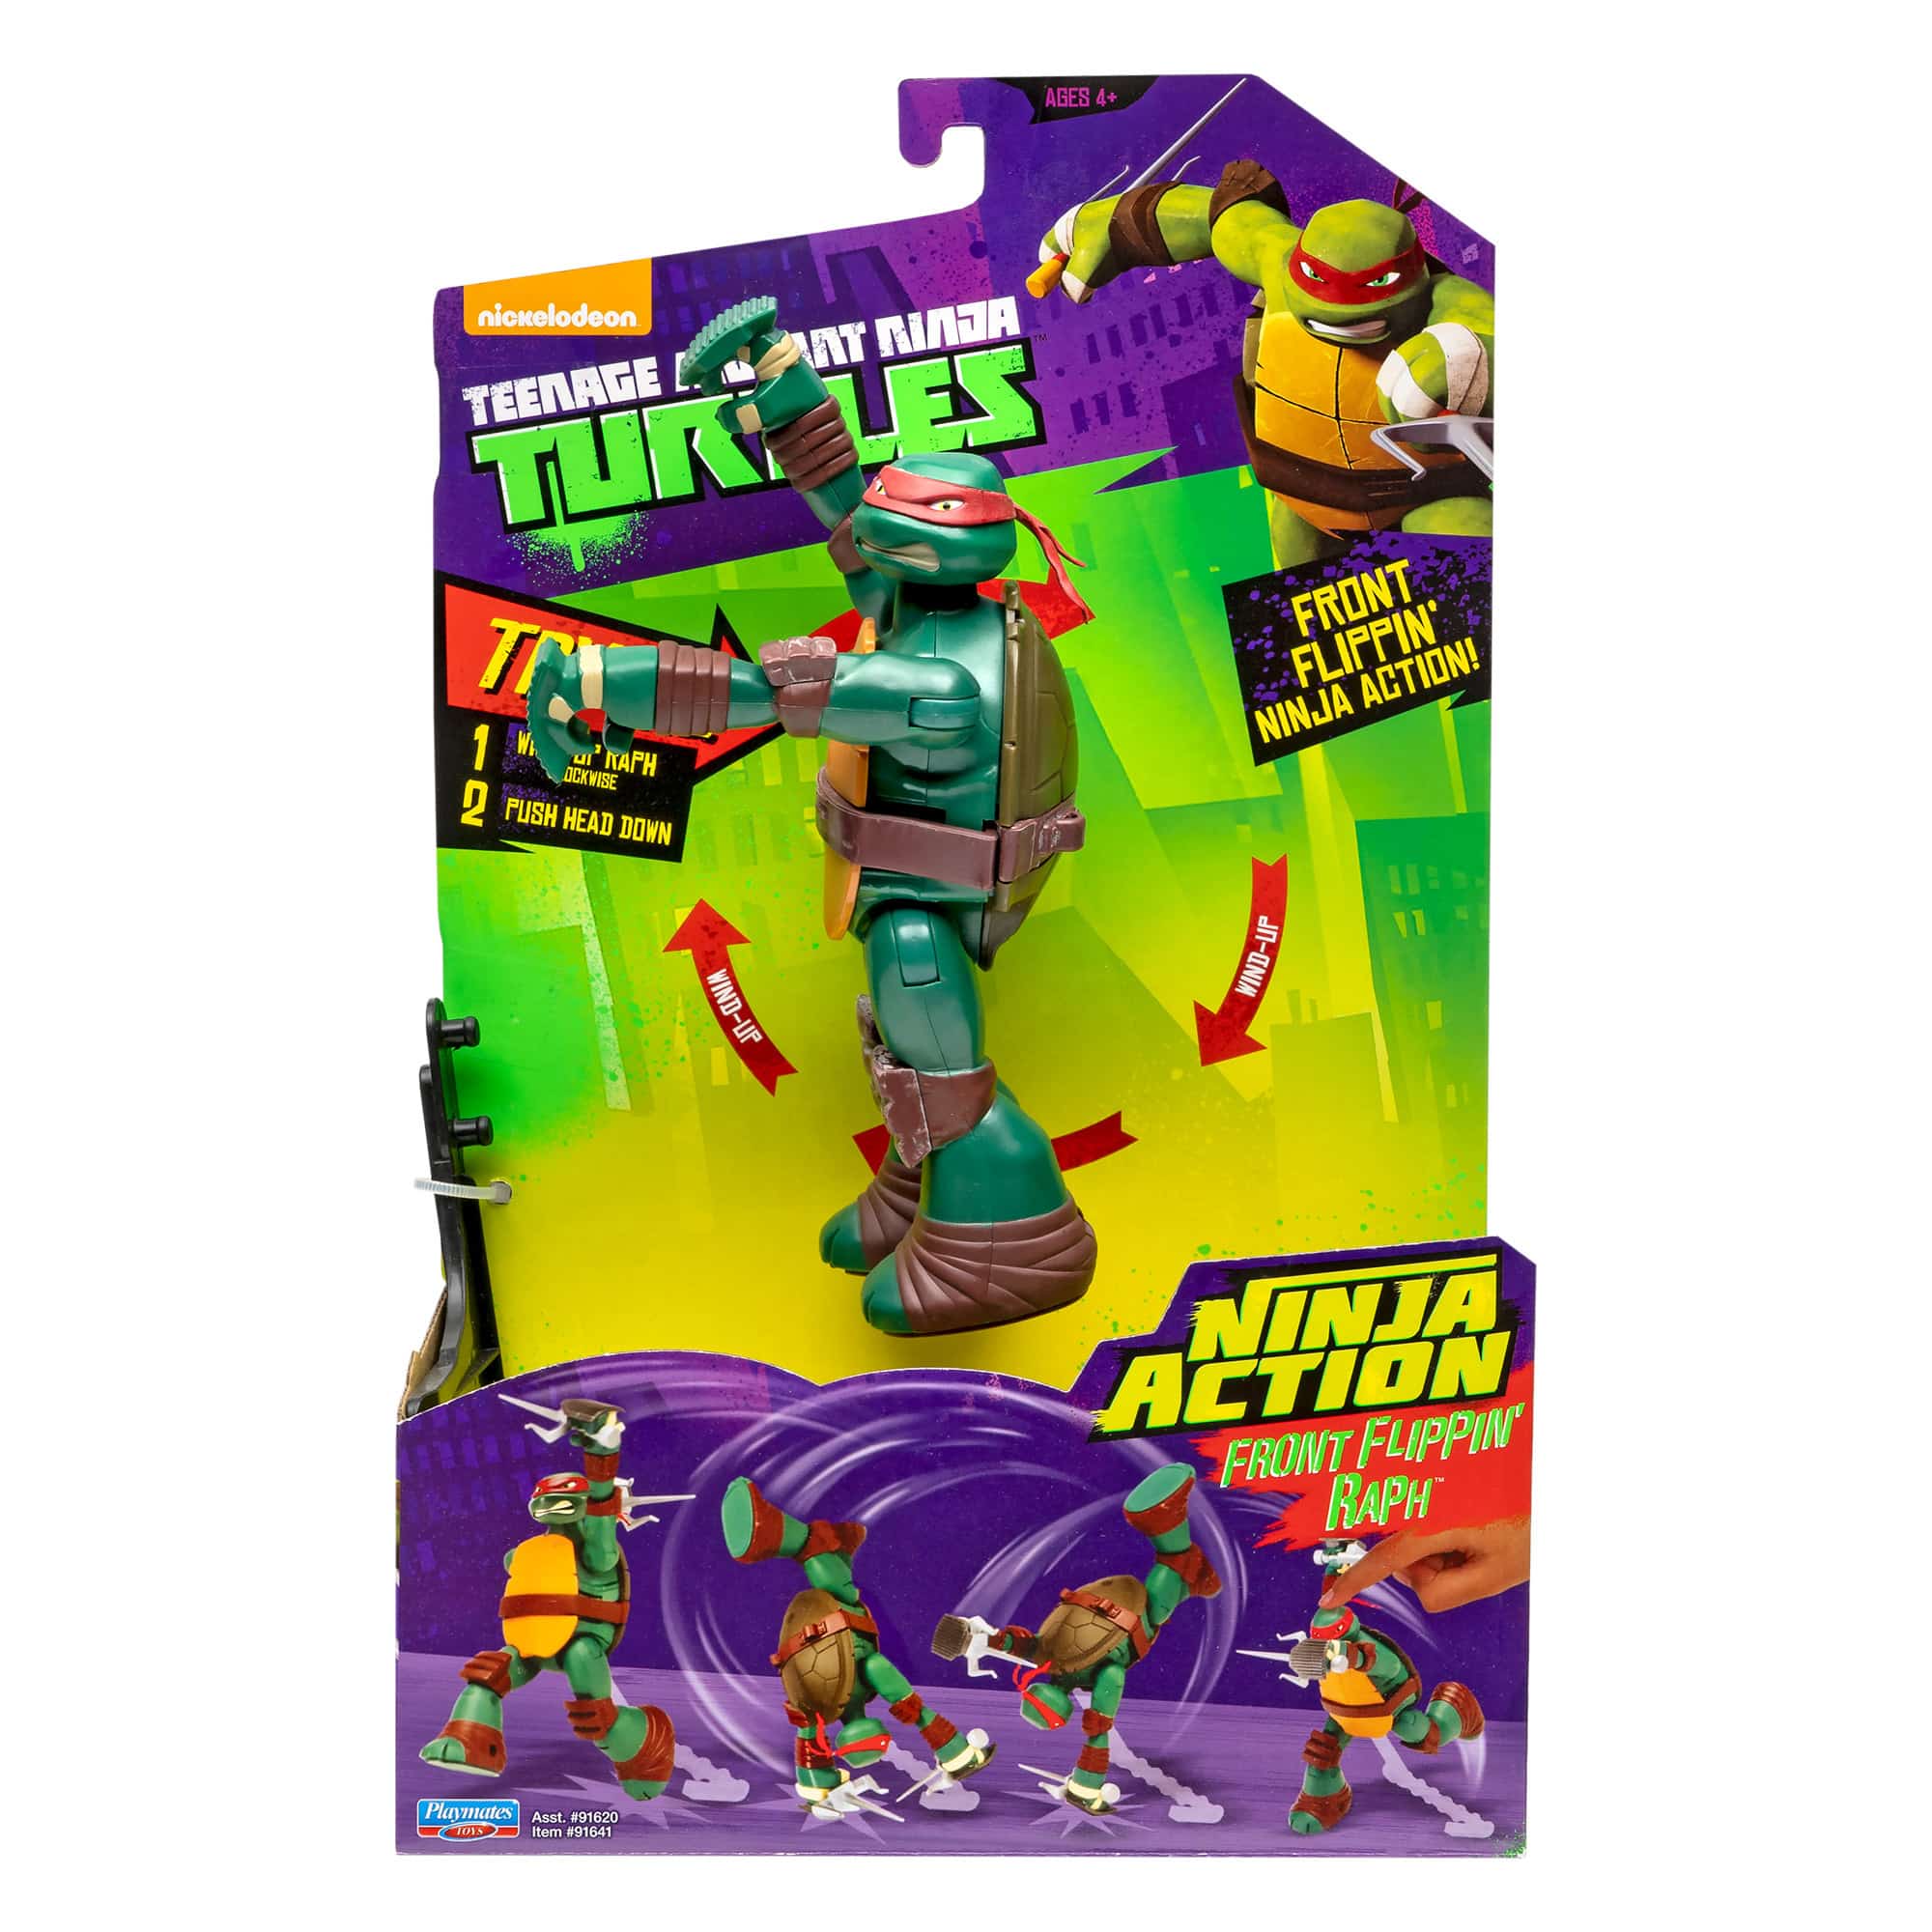 Teenage Mutant Ninja Turtles - Ninja Action - Front Flippin' Raph